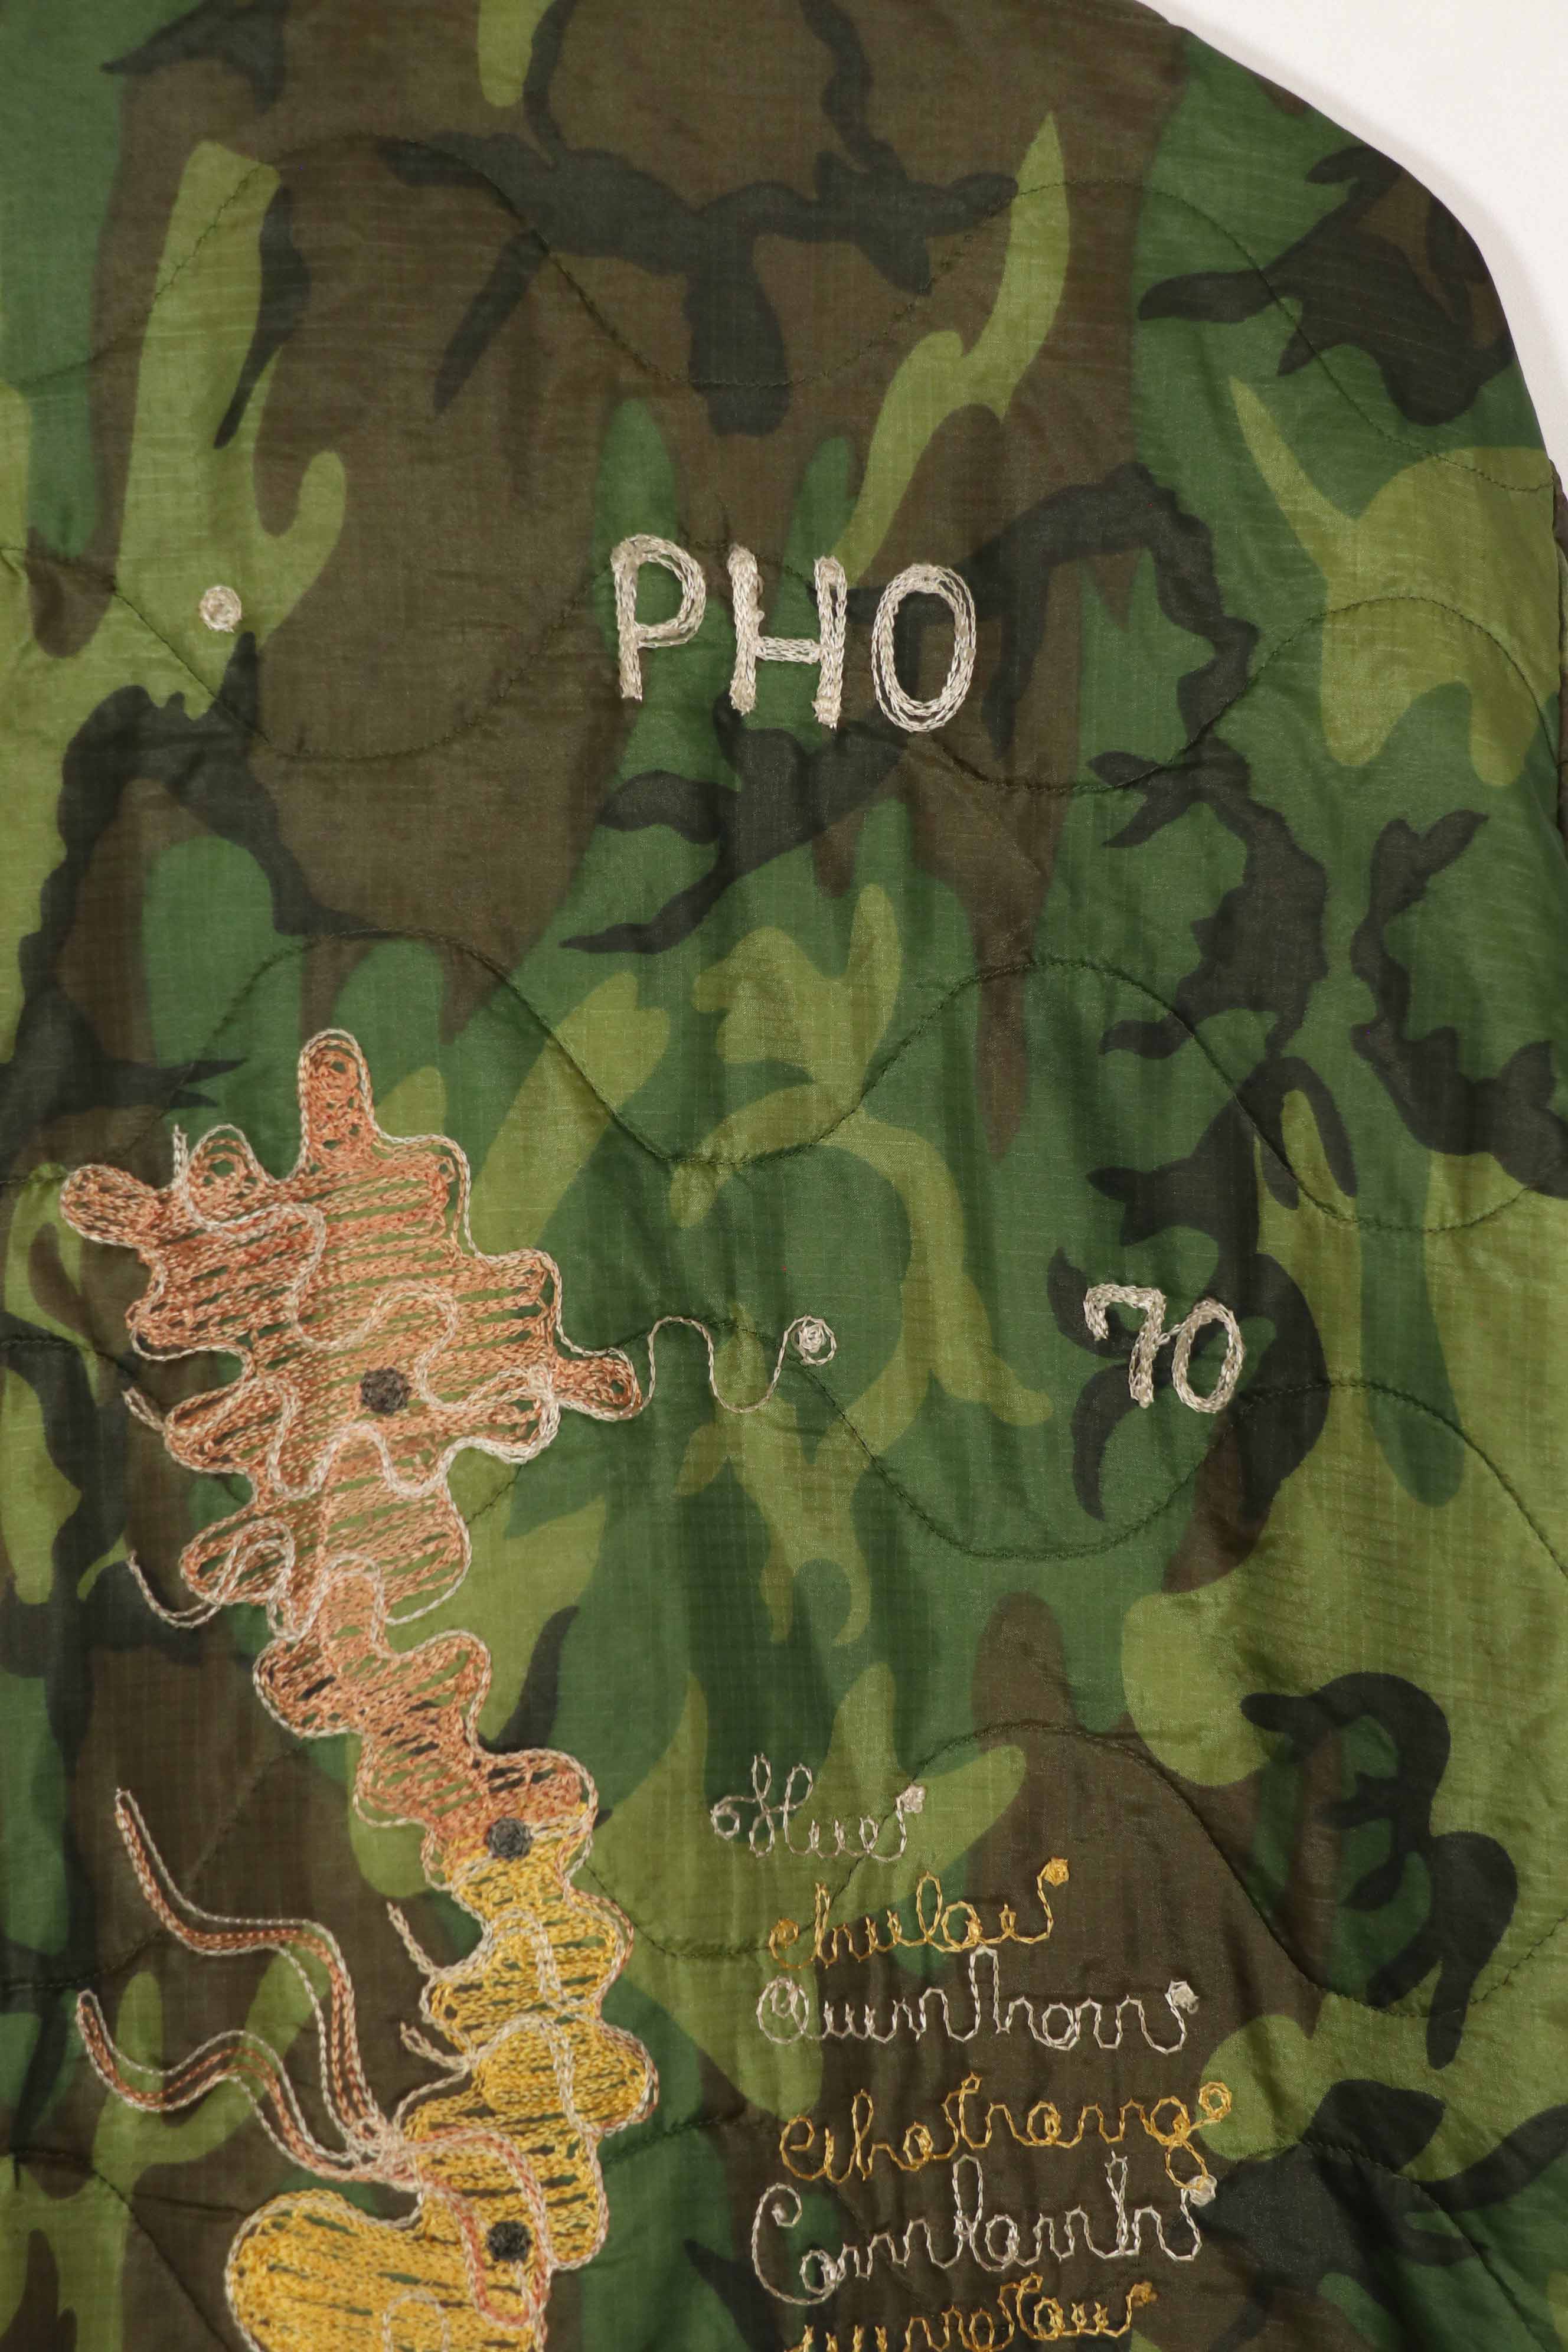 実物　米軍ポンチョライナー　ツアージャケット　DUC PHO　1969-1970　